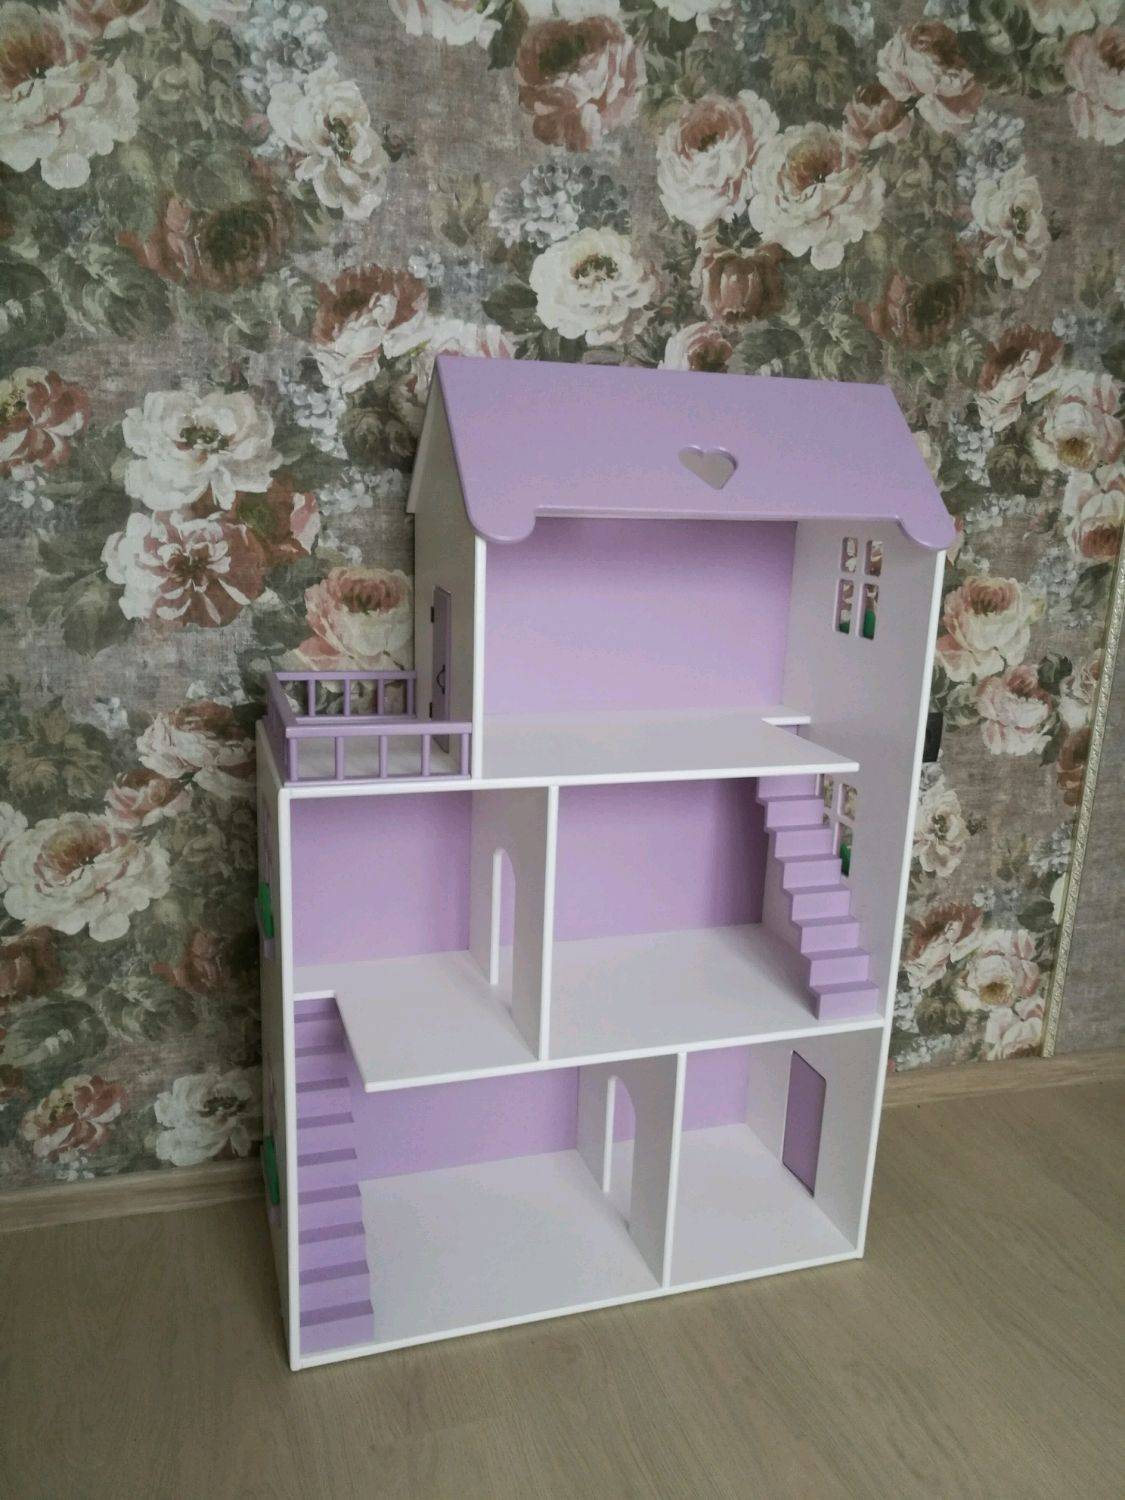 Кукольный домик своими руками — лучшие проекты, схемы и интересные идеи создания кукольных домиков для девочек